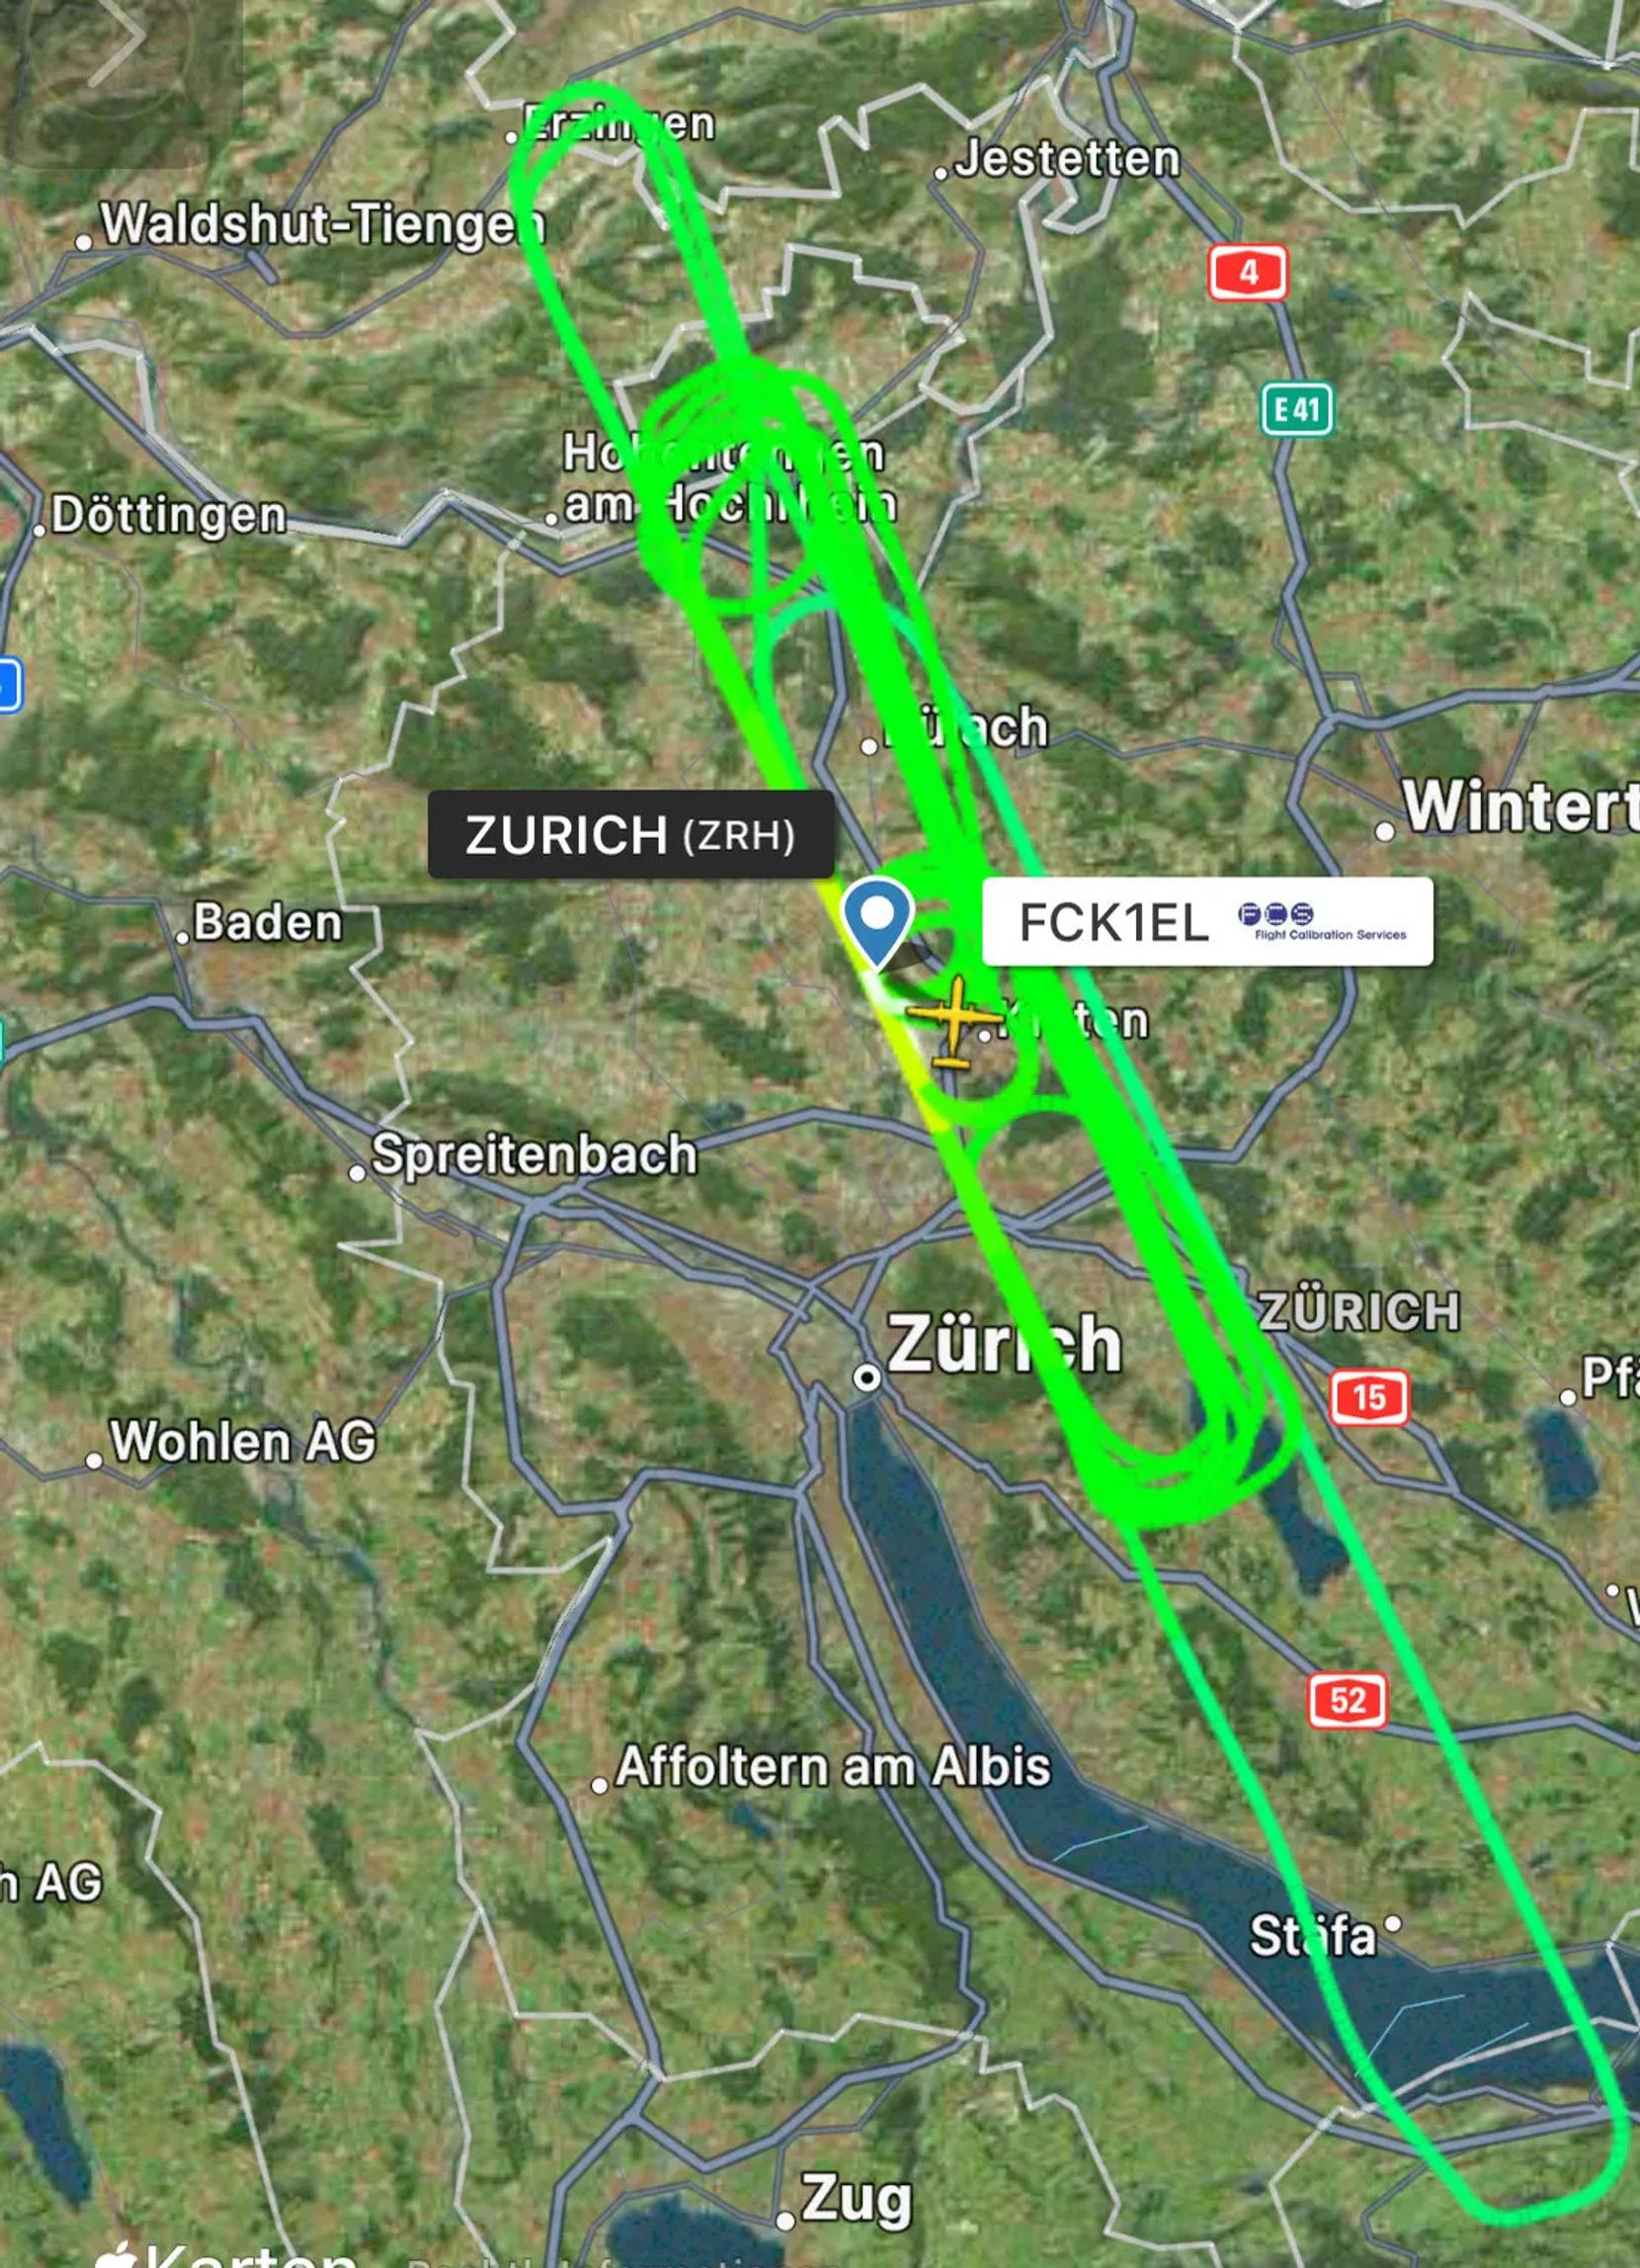 Man sieht eine Landkarte vom Kanton Zürich. Darauf sind mehrere leuchtgrüne Linien eingezeichnet, die die Messflüge über dem Glattal und dem Pfannenstiel zeigen.